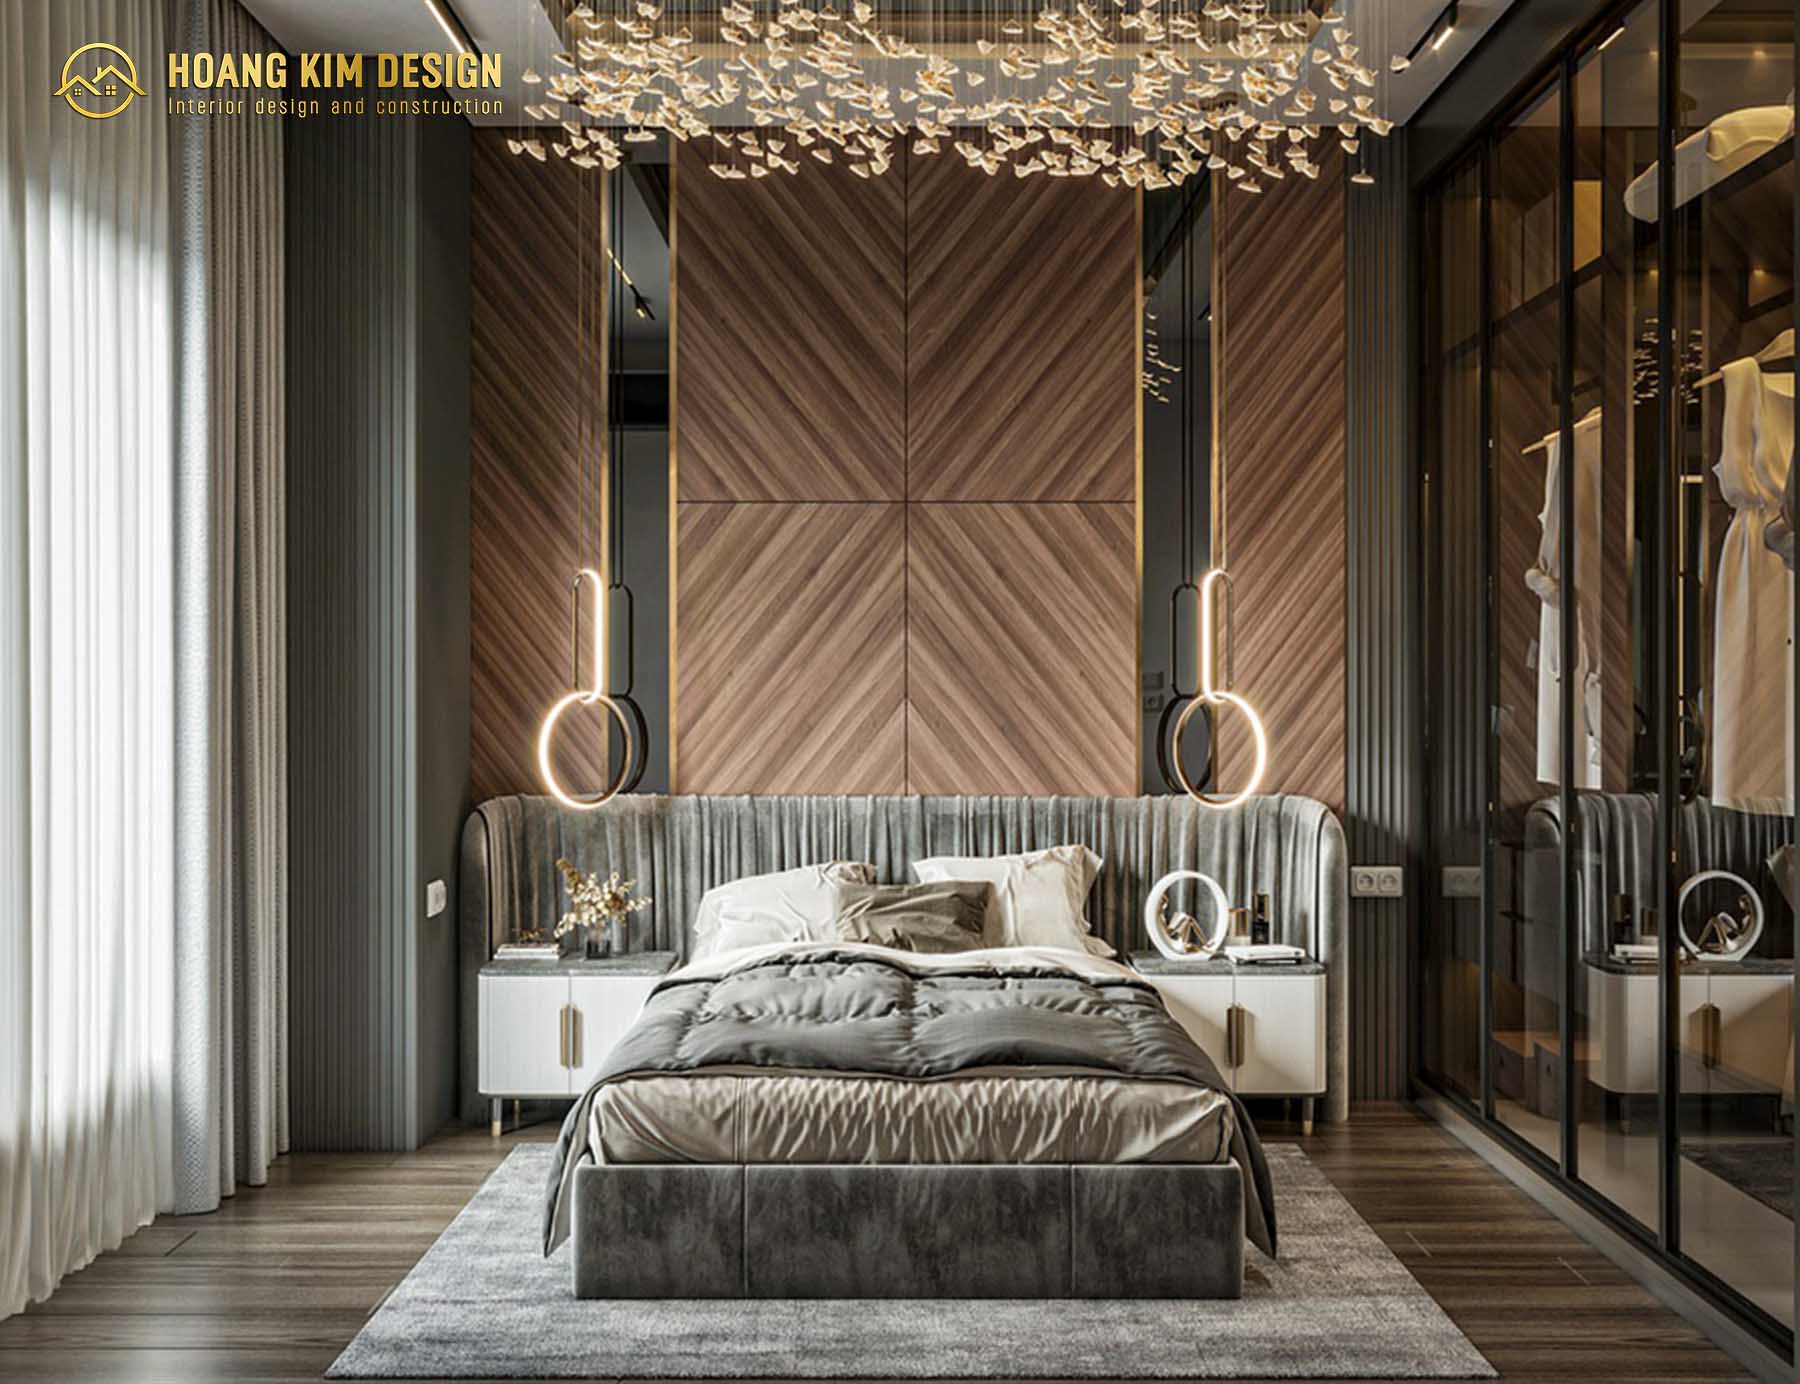 Phòng ngủ Luxury thể hiện đẳng cấp của gia chủ